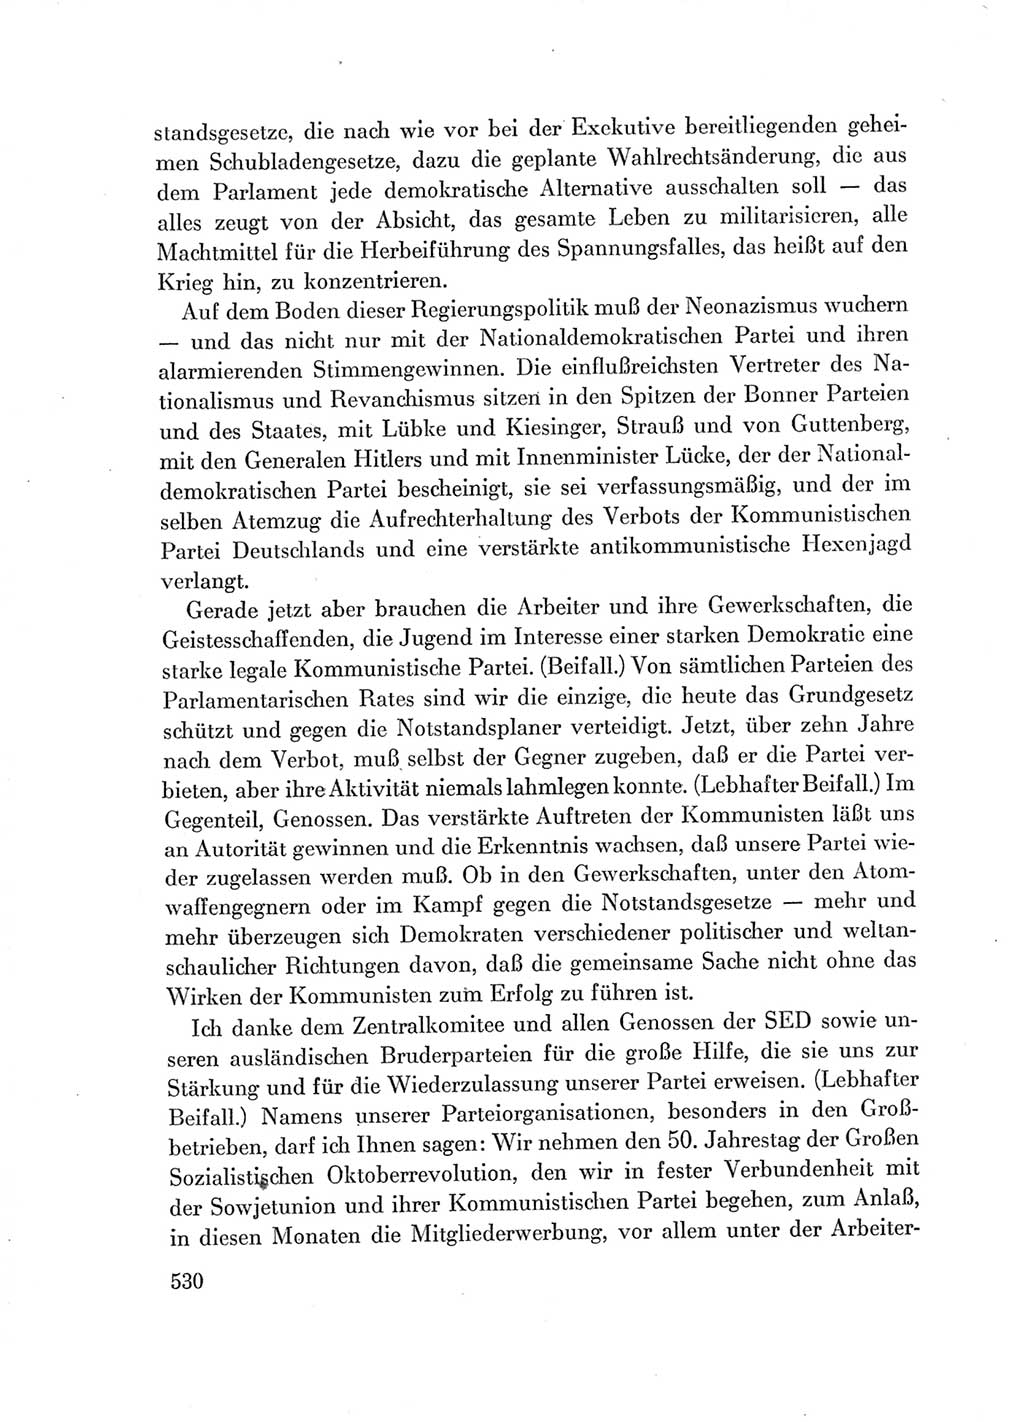 Protokoll der Verhandlungen des Ⅶ. Parteitages der Sozialistischen Einheitspartei Deutschlands (SED) [Deutsche Demokratische Republik (DDR)] 1967, Band Ⅰ, Seite 530 (Prot. Verh. Ⅶ. PT SED DDR 1967, Bd. Ⅰ, S. 530)